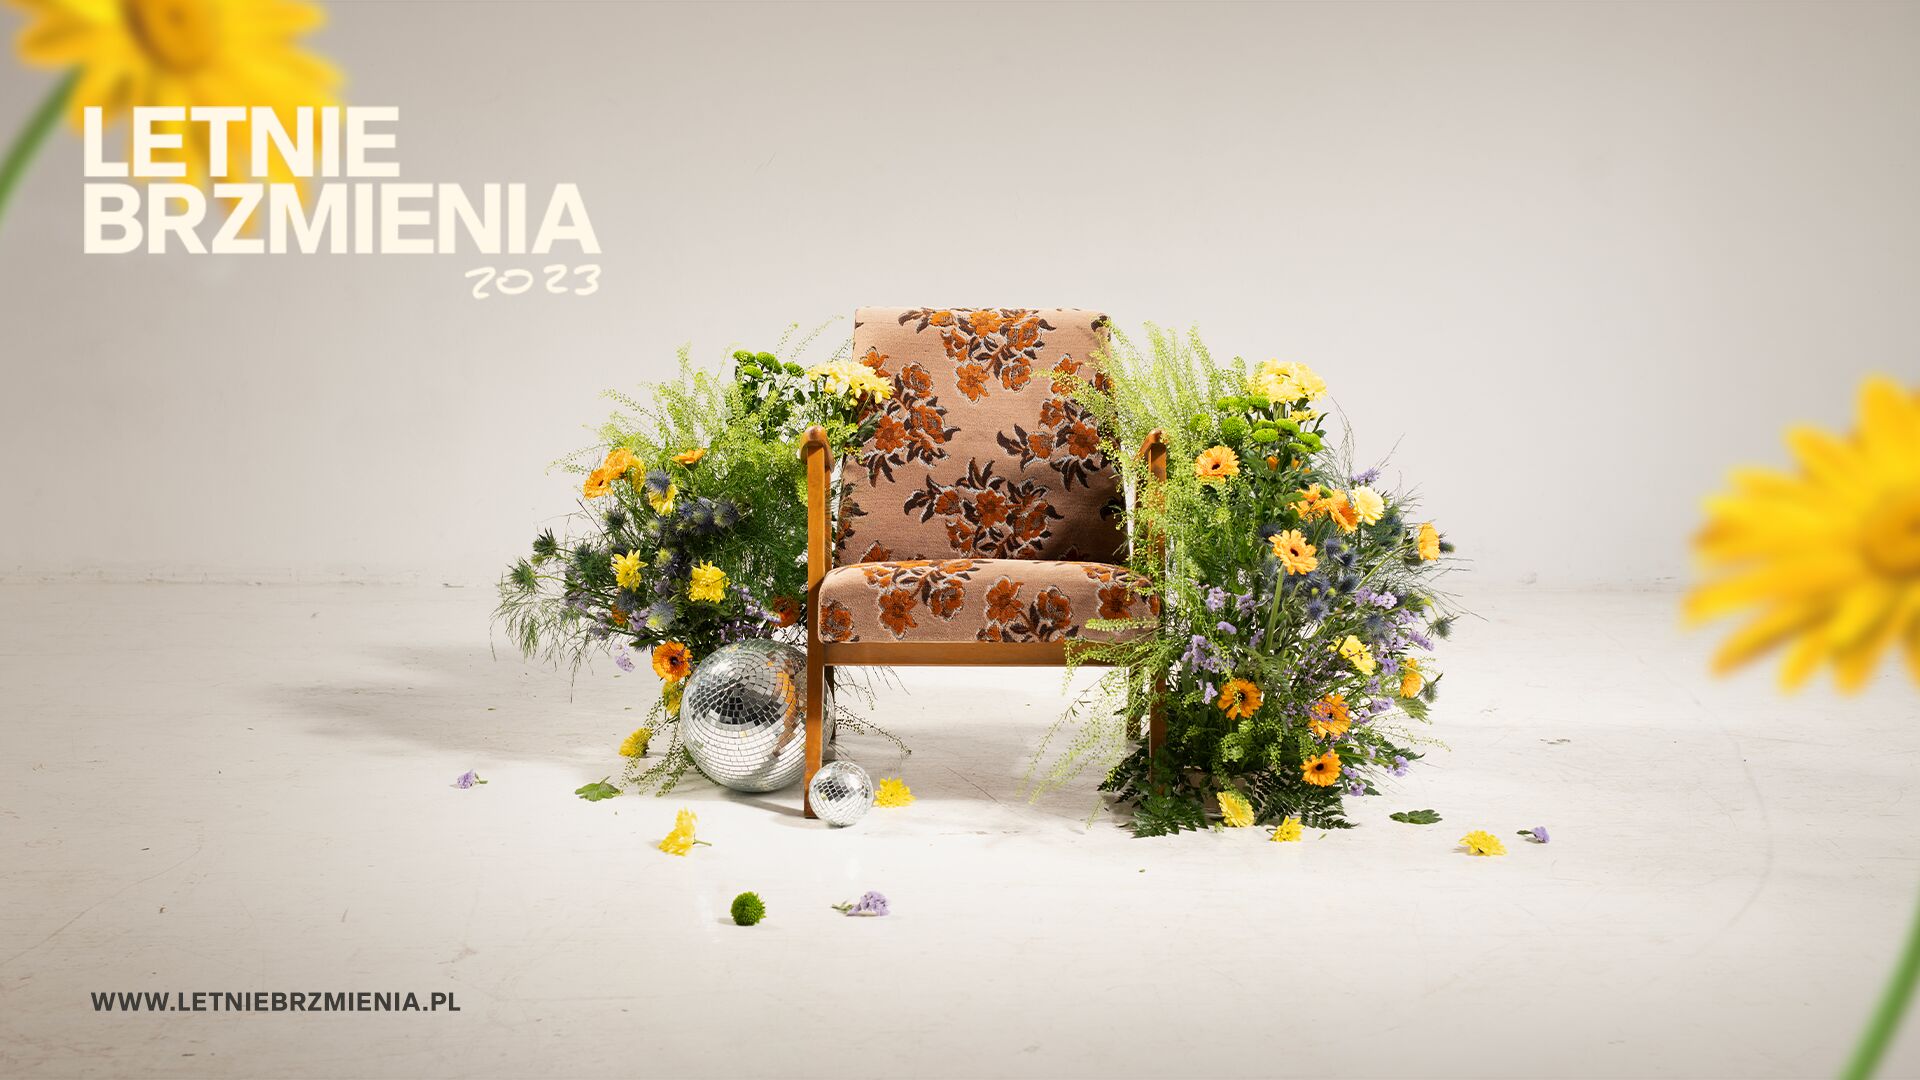 Plakat z infrmacjami o wydarzeniu oraz fotelem otoczonym kwiatami - grafika artykułu